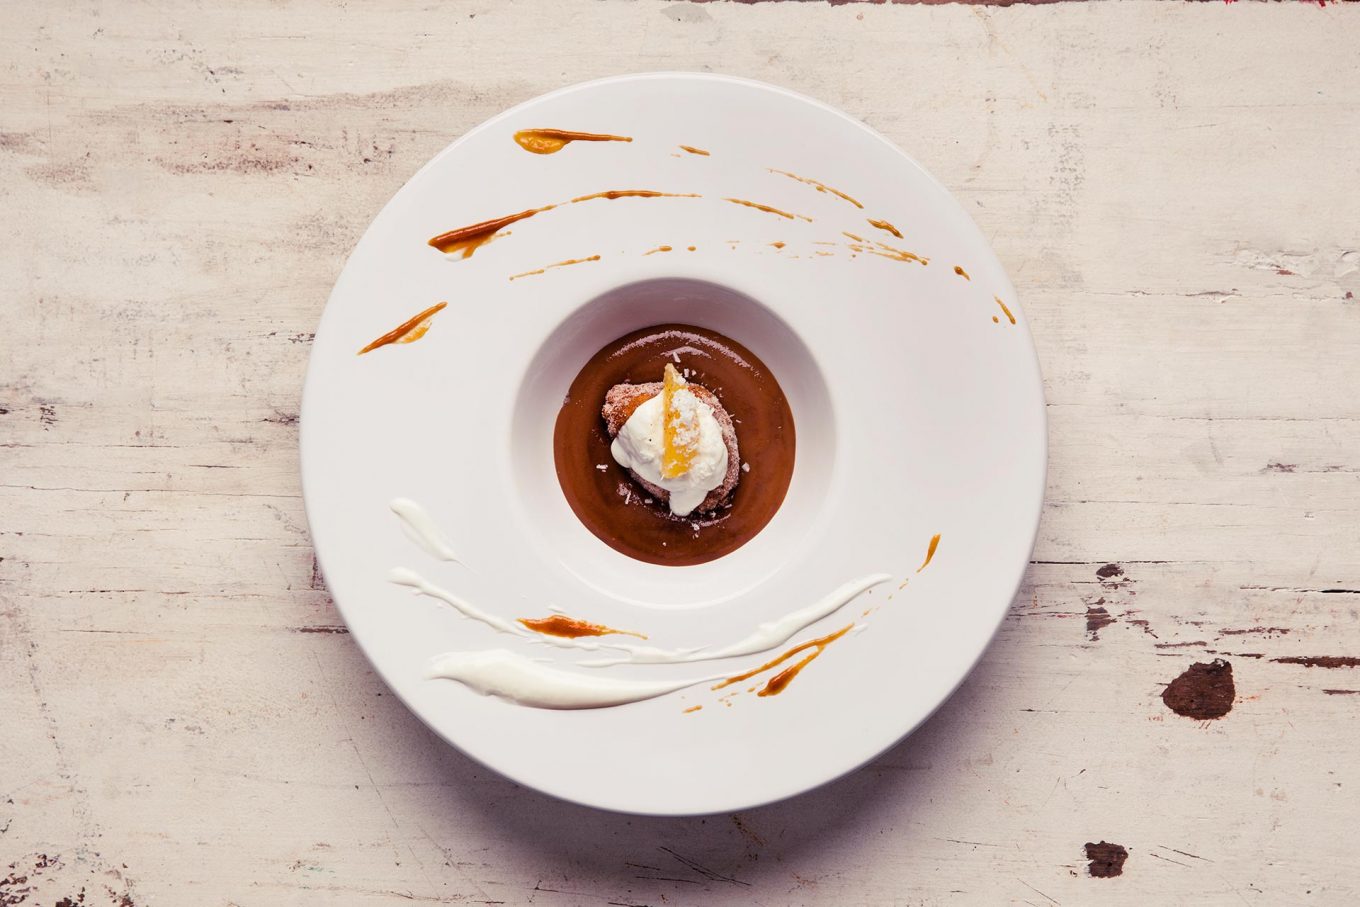 Imagem: O prato de entrada servindo a sobremesa: creme de caramelo com bolinho de chuva.